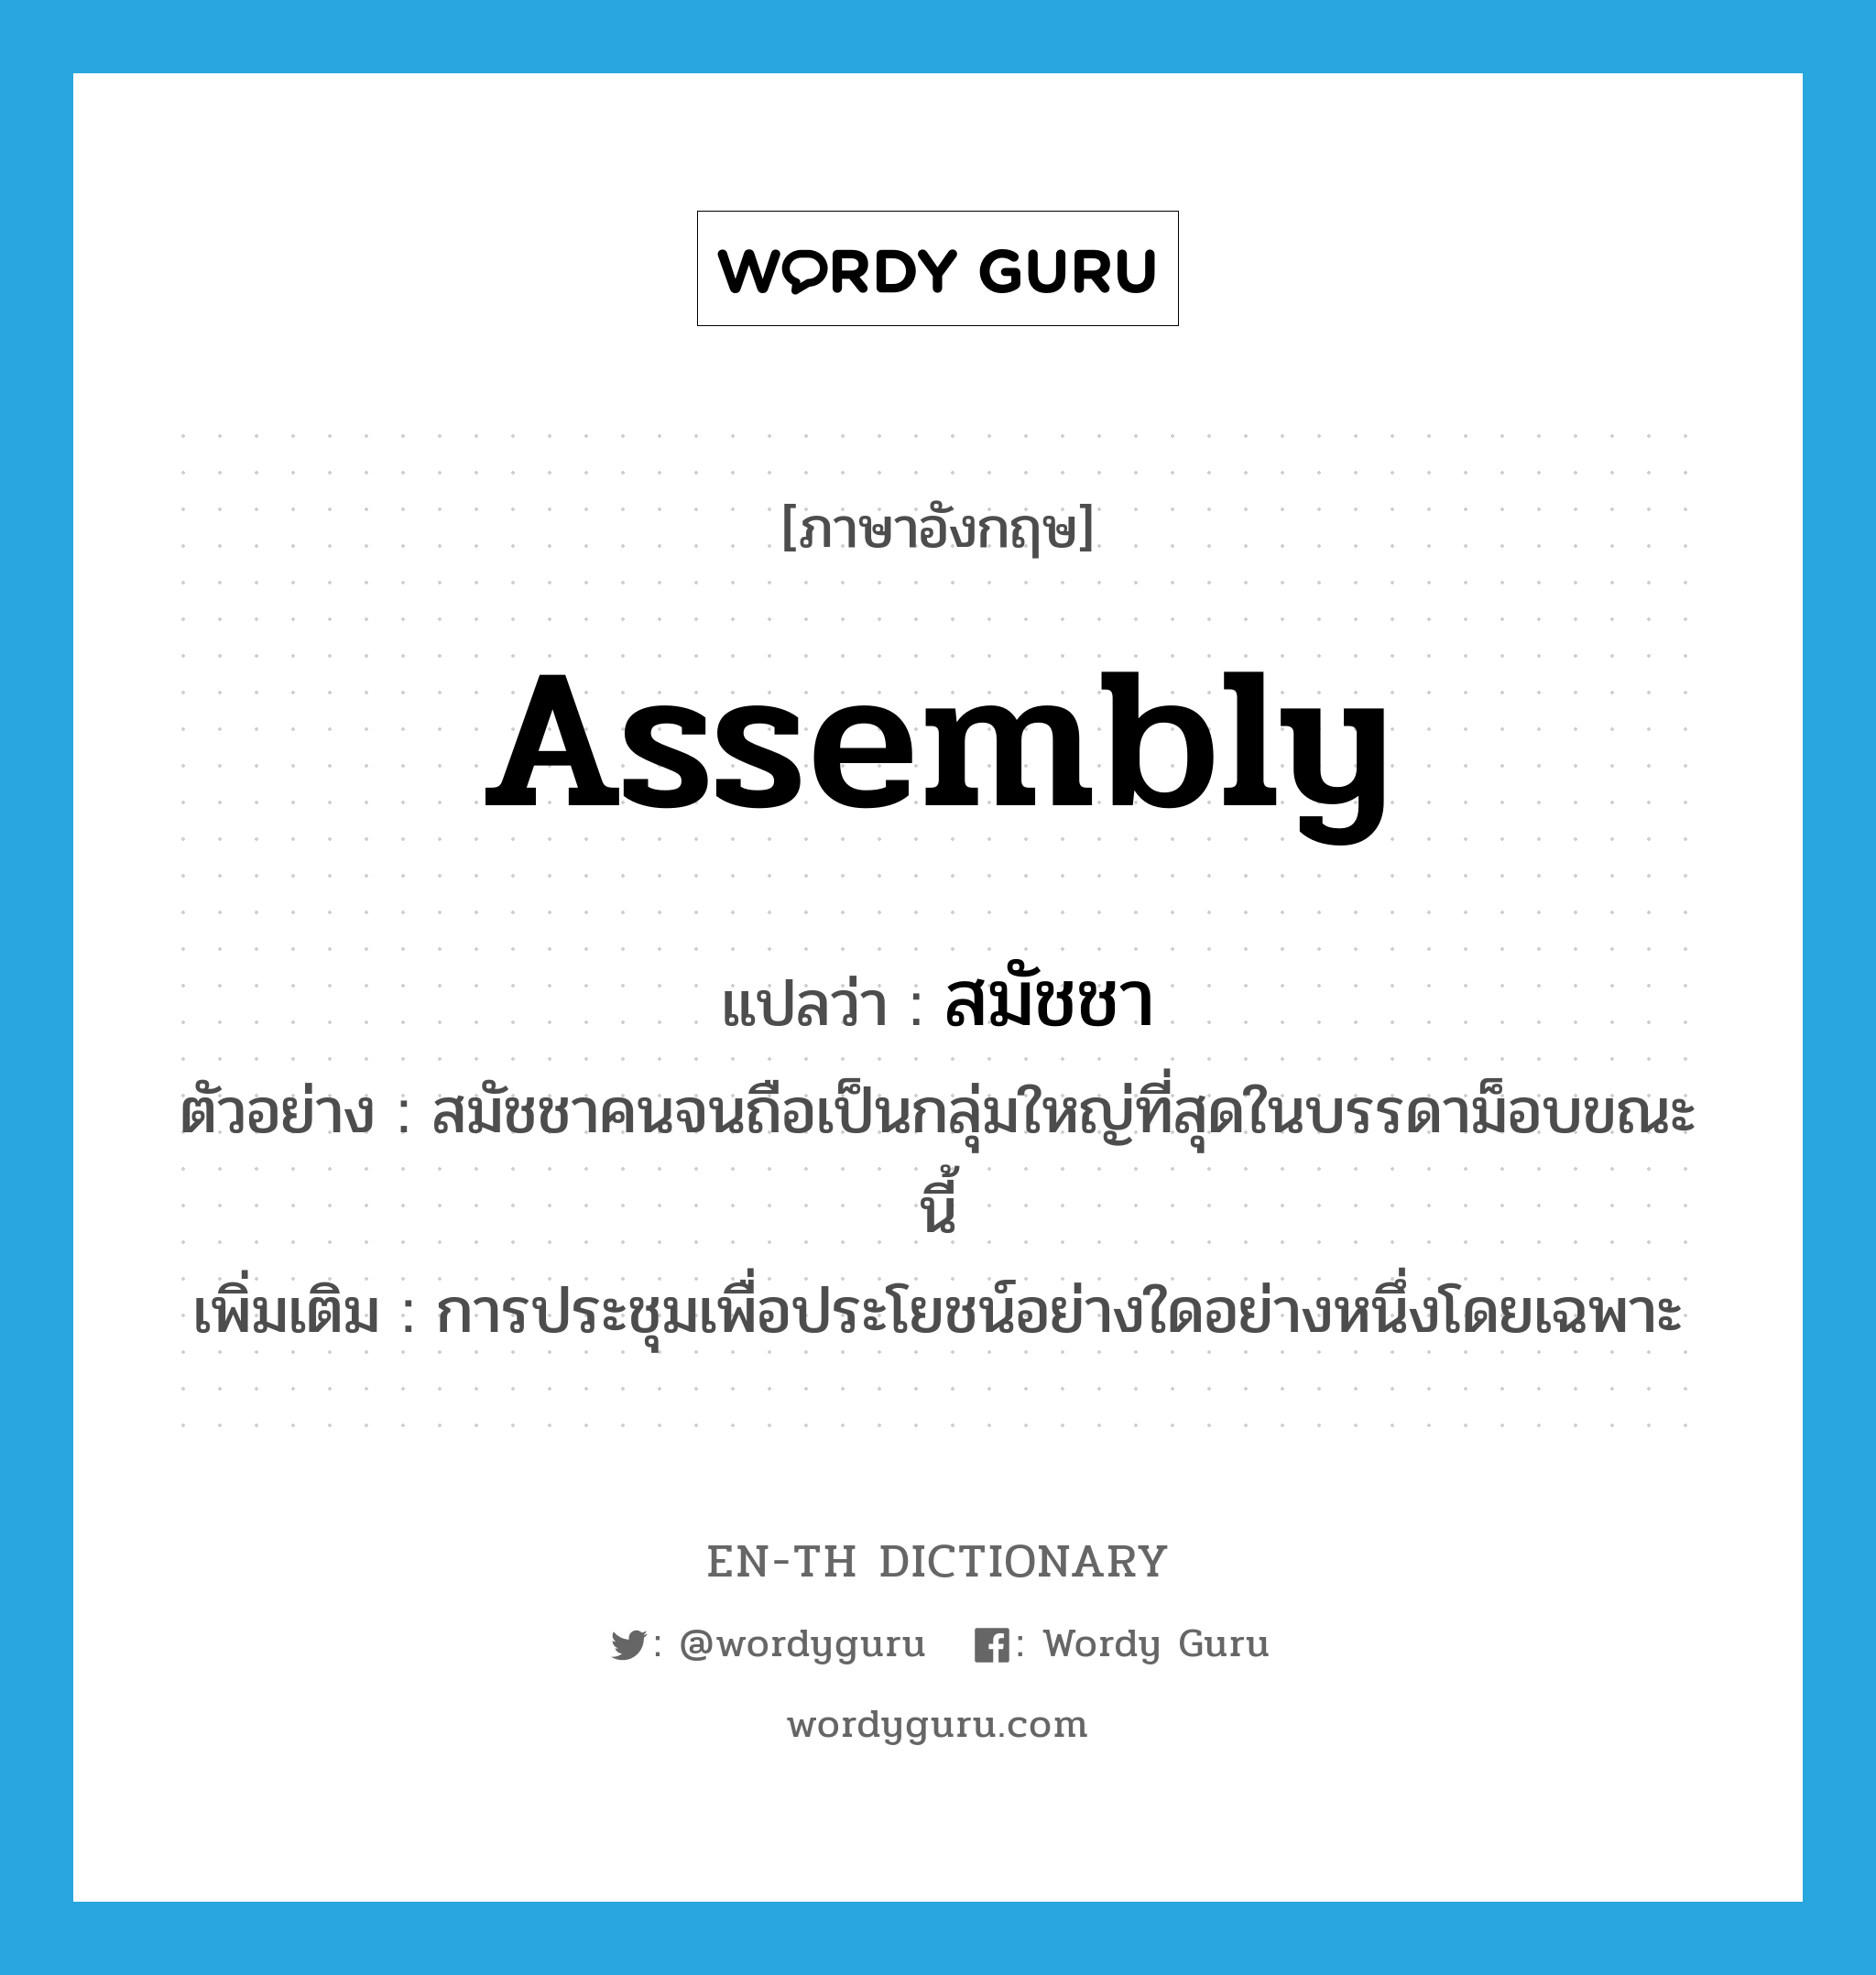 assembly แปลว่า?, คำศัพท์ภาษาอังกฤษ assembly แปลว่า สมัชชา ประเภท N ตัวอย่าง สมัชชาคนจนถือเป็นกลุ่มใหญ่ที่สุดในบรรดาม็อบขณะนี้ เพิ่มเติม การประชุมเพื่อประโยชน์อย่างใดอย่างหนึ่งโดยเฉพาะ หมวด N